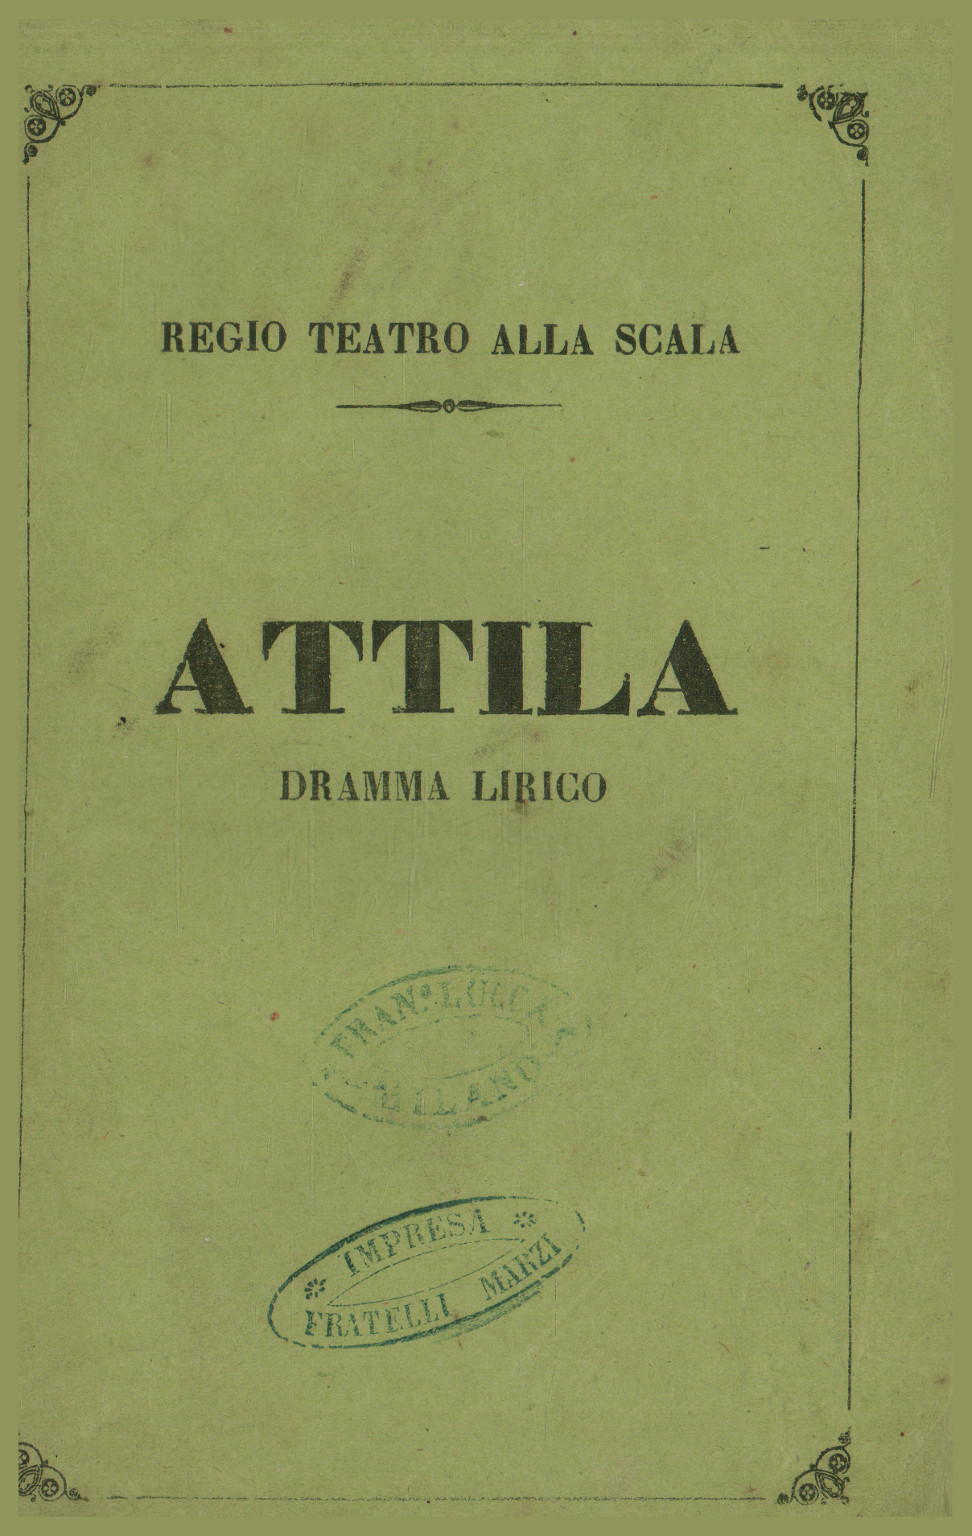 Attila, dramma lirico in un prologo e tre atti da rappresentarsi nel R